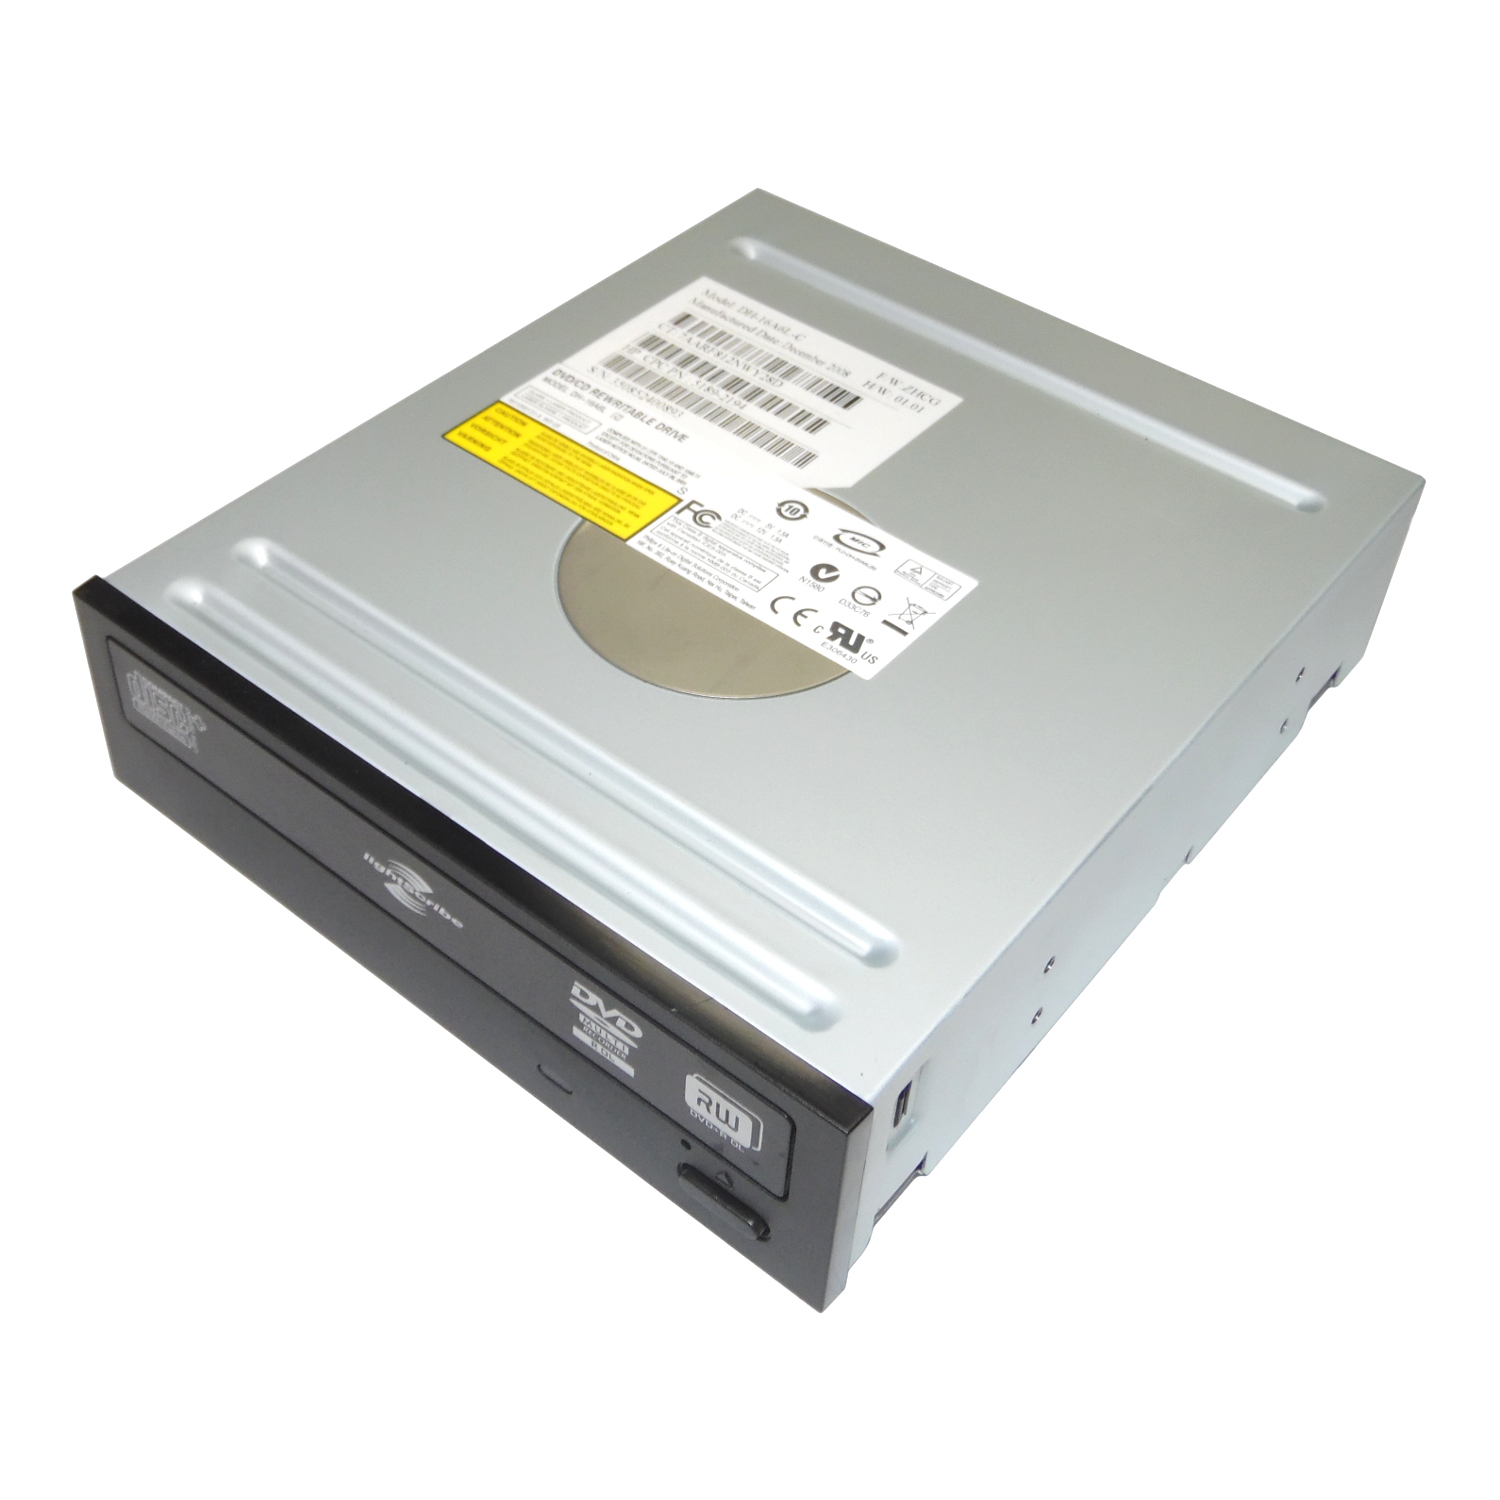 HP 5189-2194 Desktop DVD?RW Dual Layer Super Multi SATA Optical Burner Drive